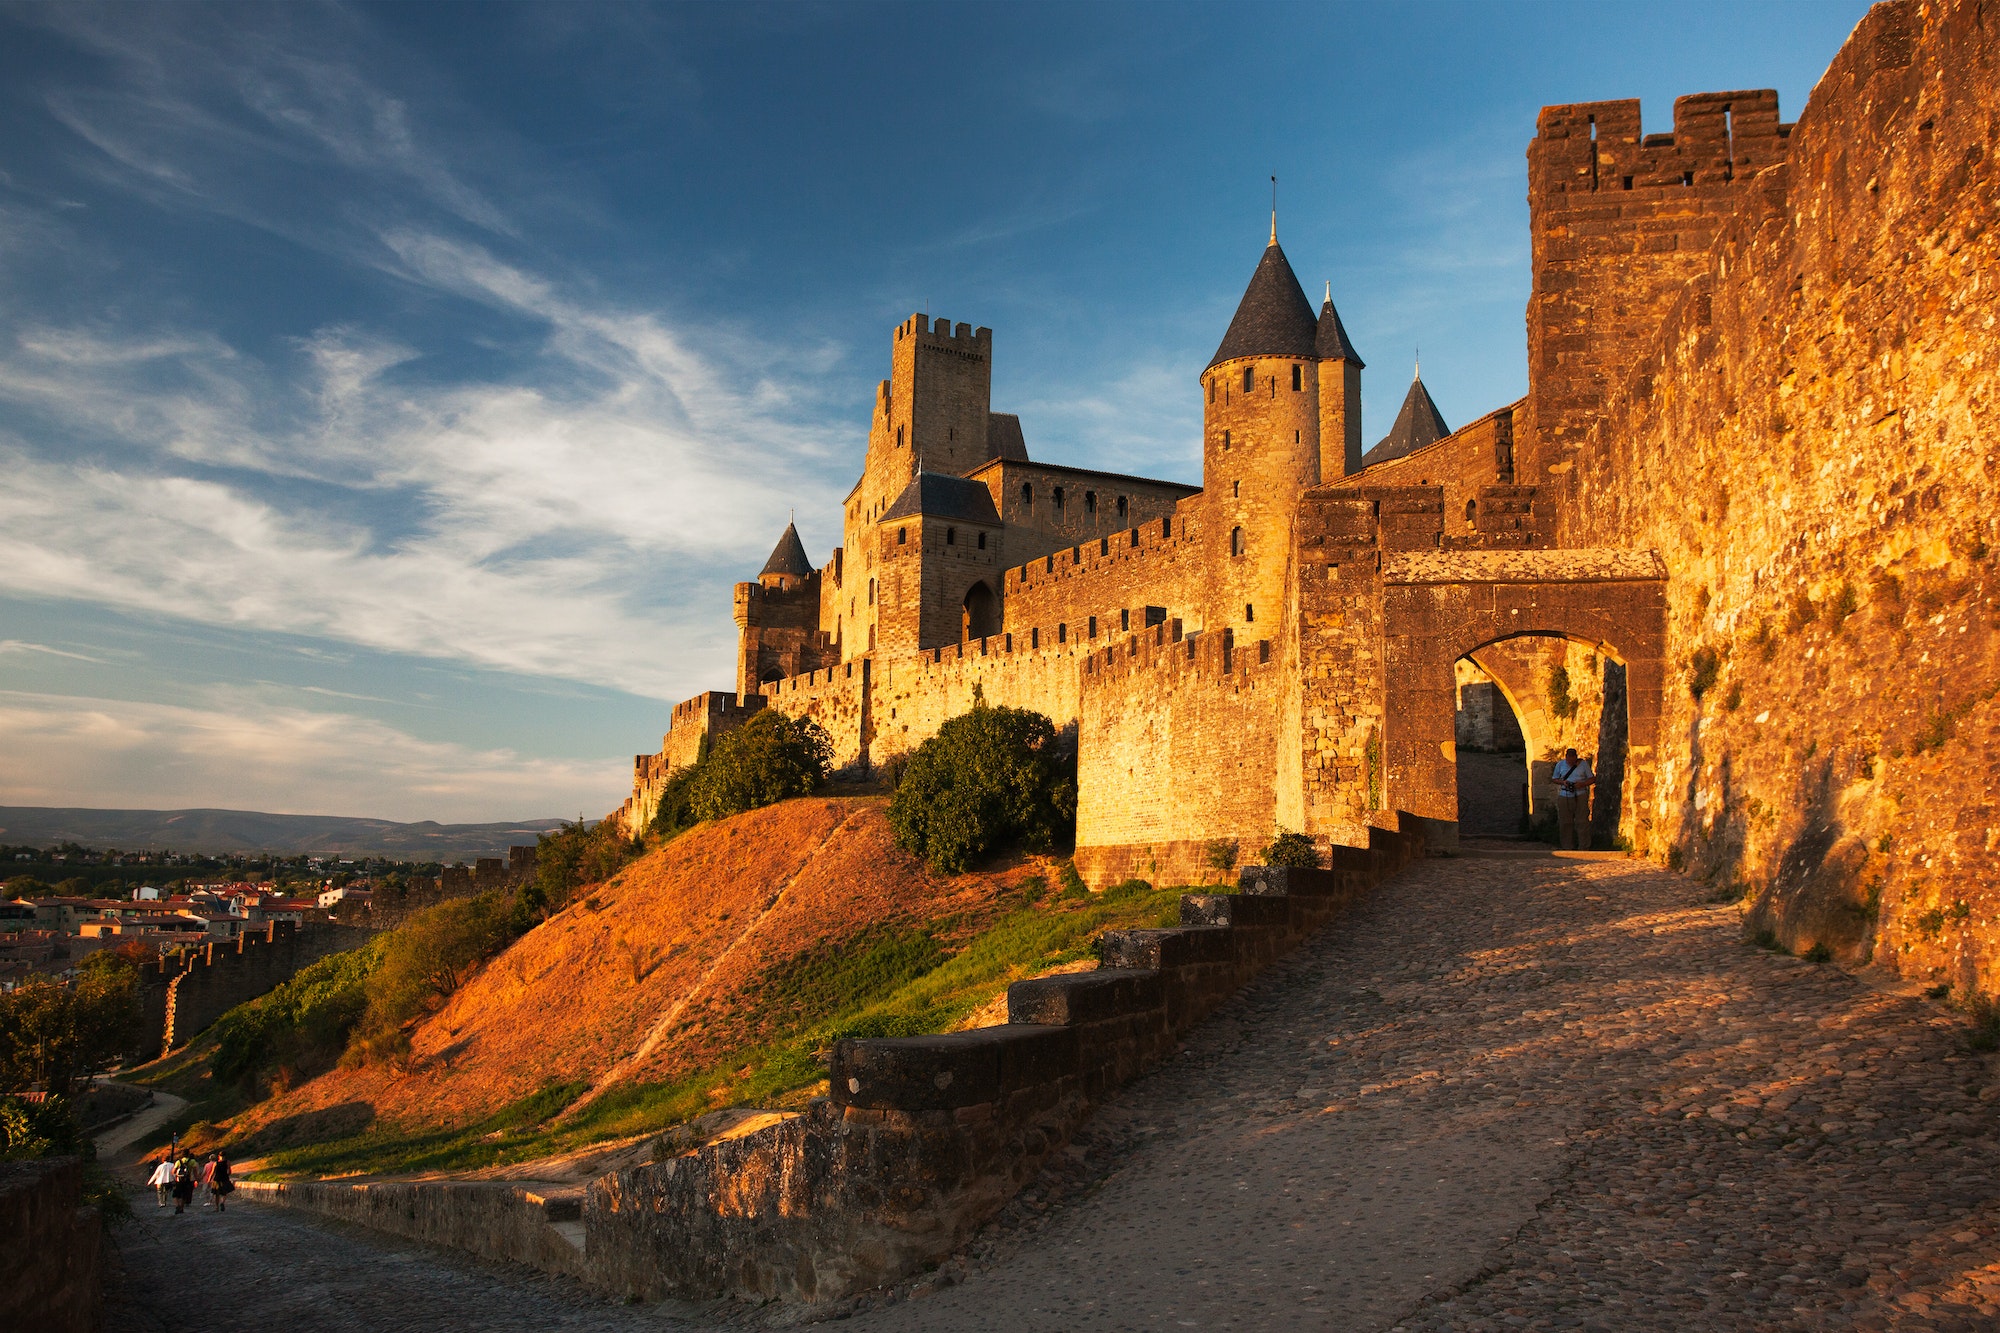 Explorons la cité médiévale de Carcassonne